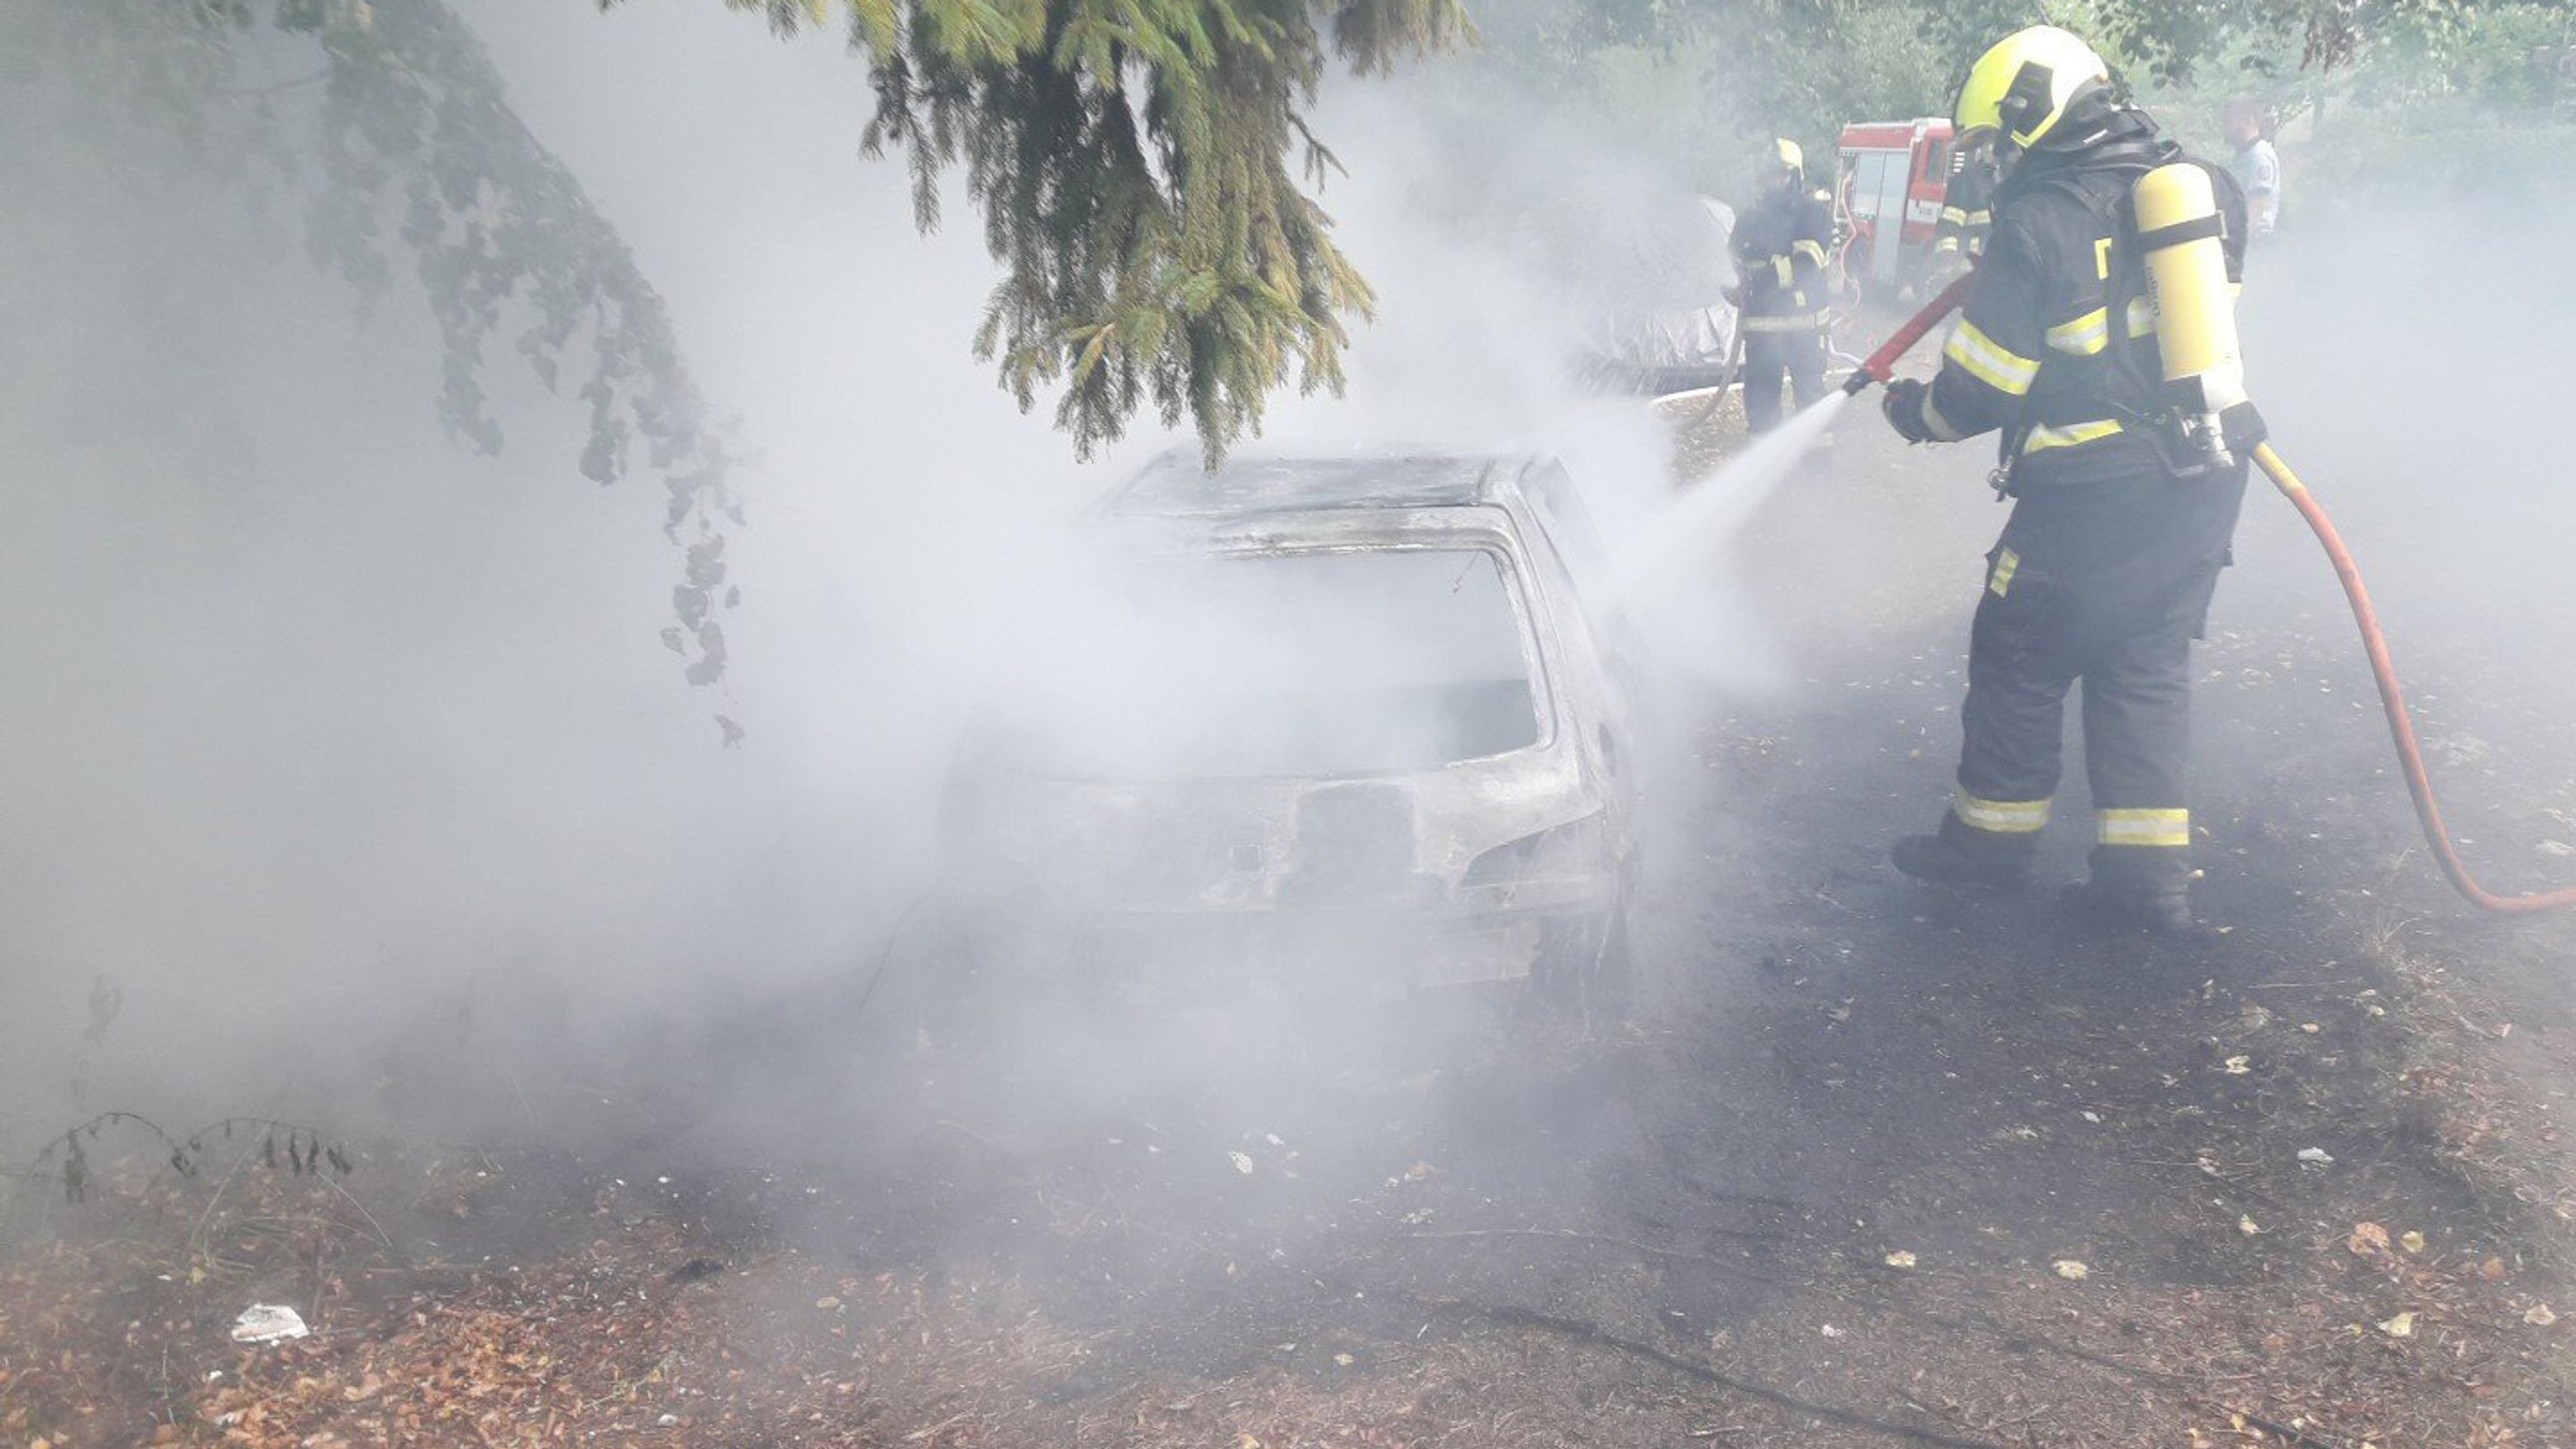 Požár elektromobilu na Plzeňsku - Požár malého přestavěného elektromobilu na Plzeňsku (9/10)